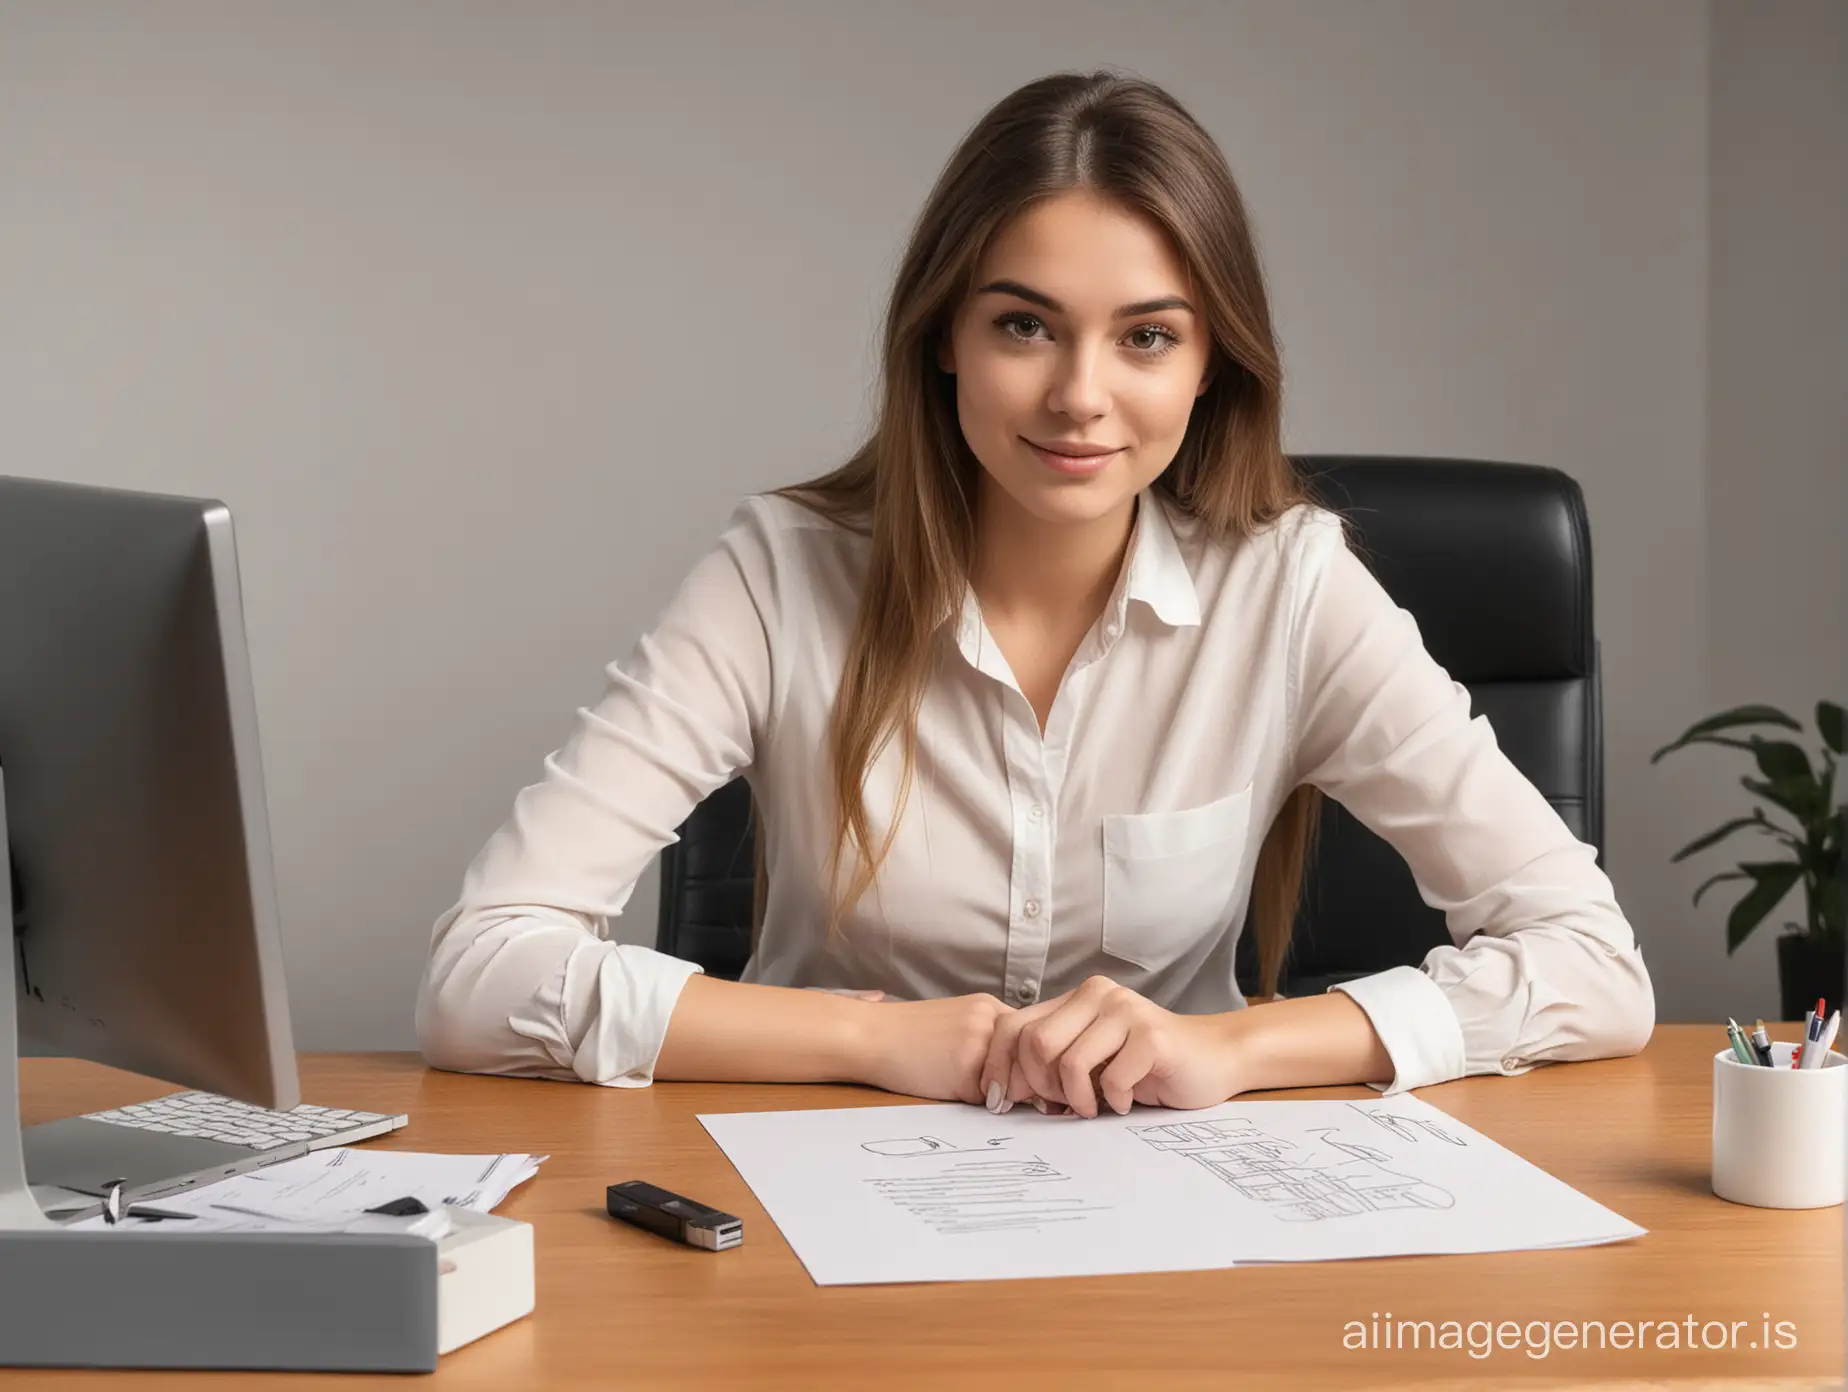 нарисуй девушку в рисованном стиле которая сидит за офисным столом и держит в руке флэшку с электронной подписью